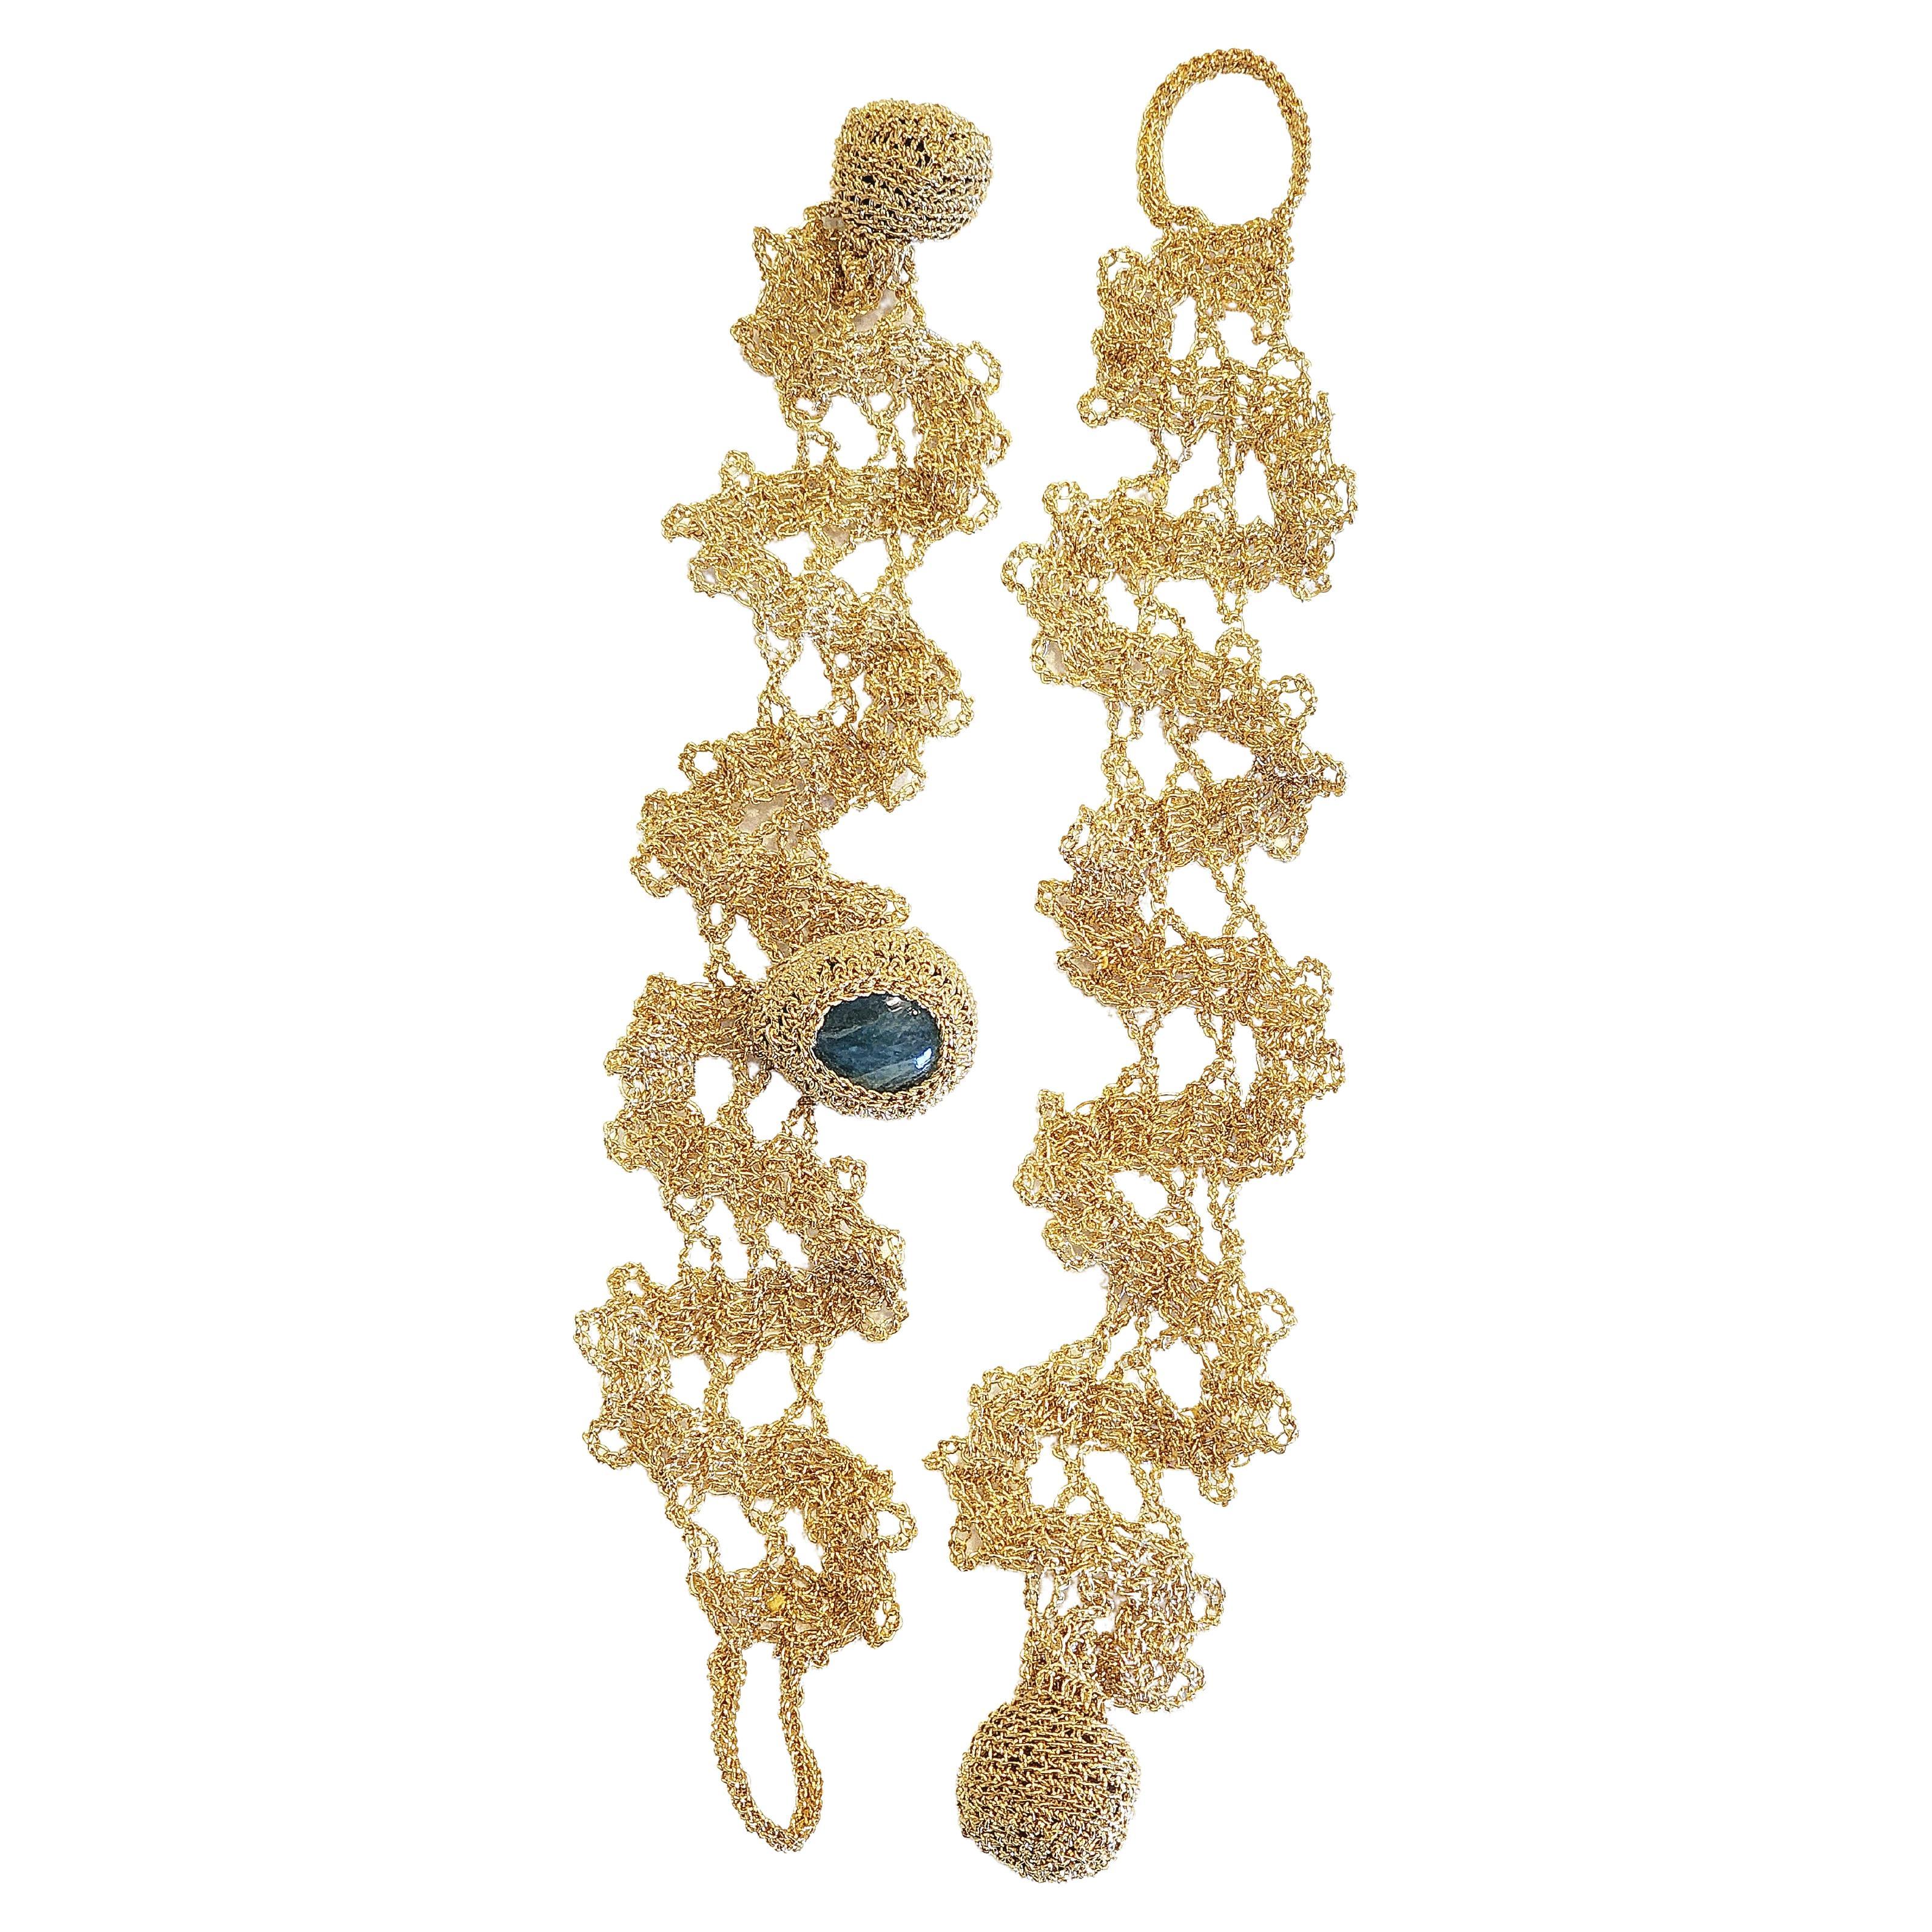 Bracelets à crochet en fil d'or 18 carats Aigue-marine en forme de poire laiteuse